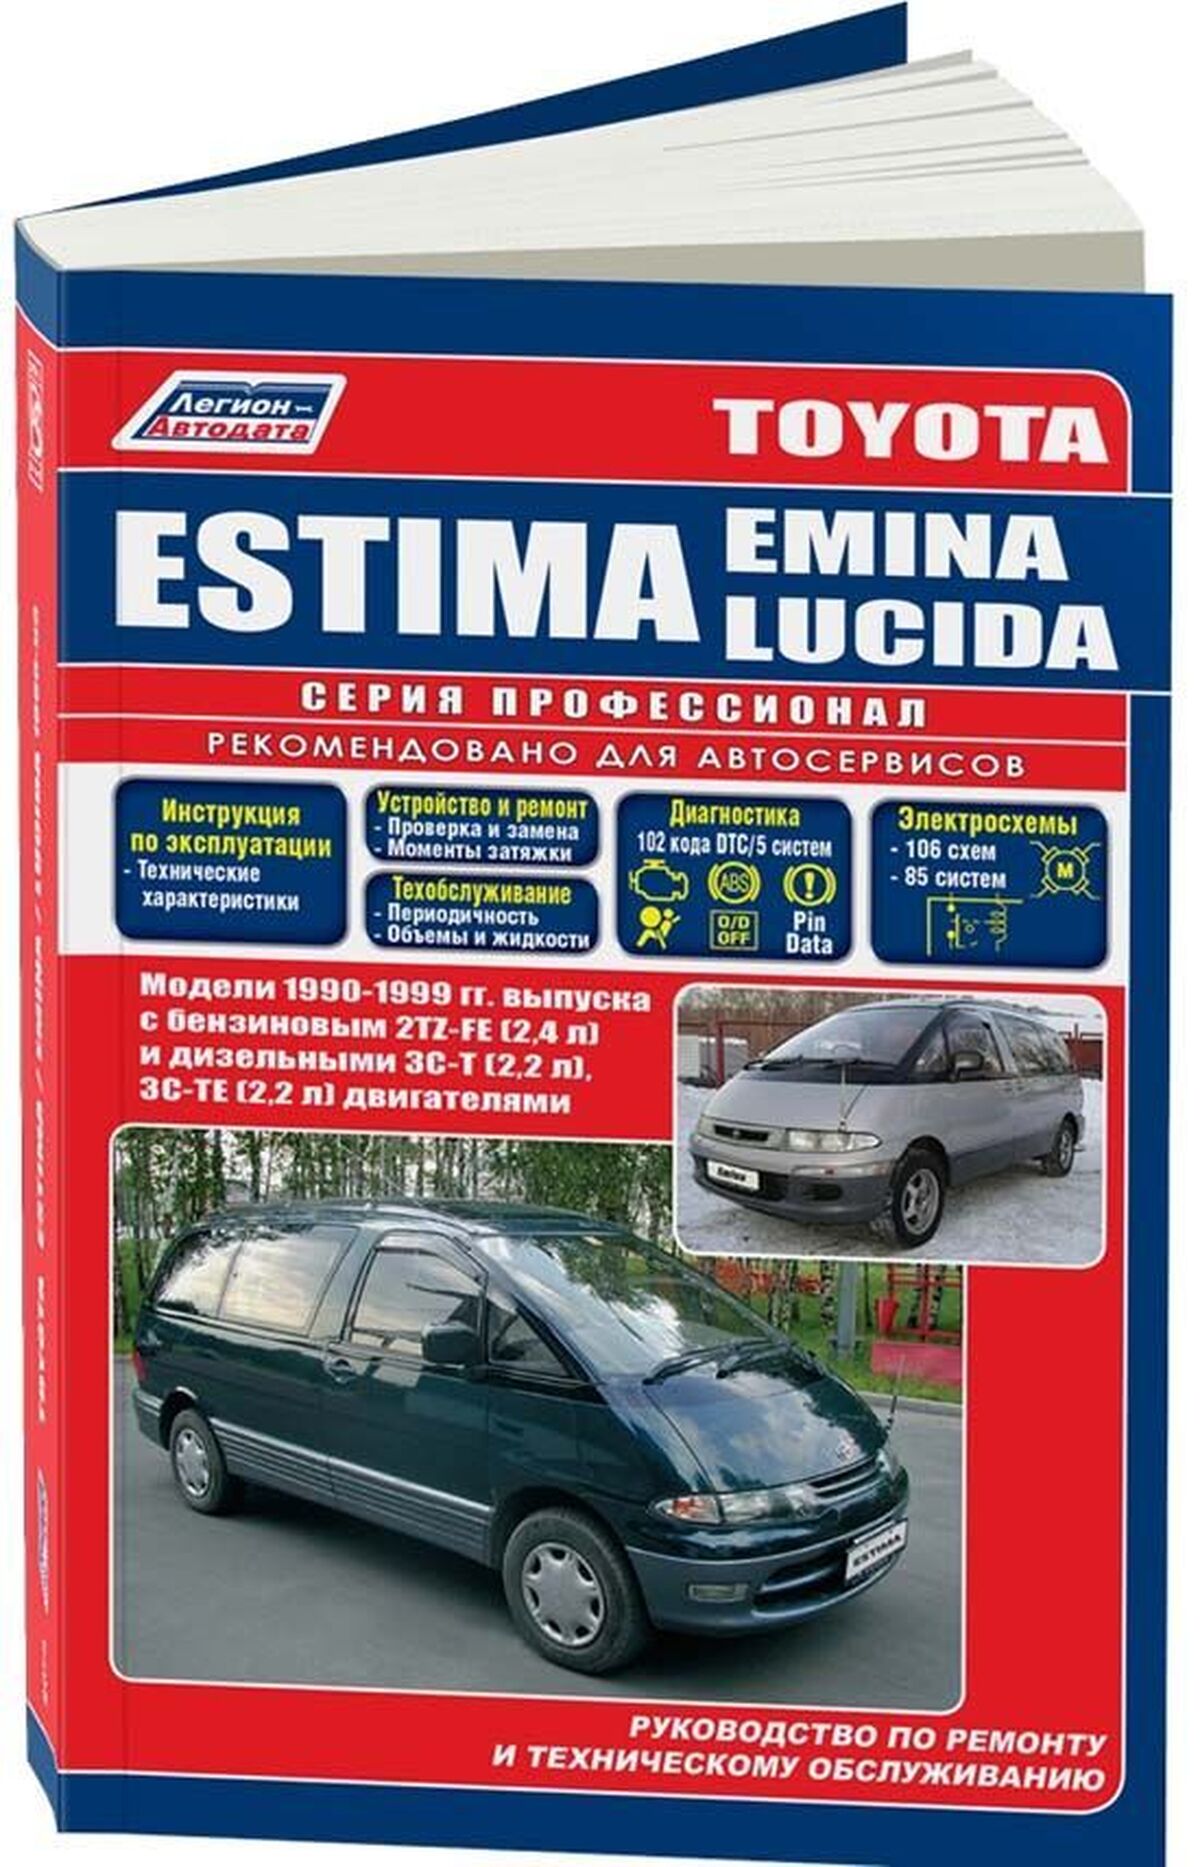 Книга: TOYOTA ESTIMA / ESTIMA EMINA / ESTIMA LUCIDA (б , д) 1990-1999 г.в., рем., экспл., то, сер.ПРОФ. | Легион-Aвтодата